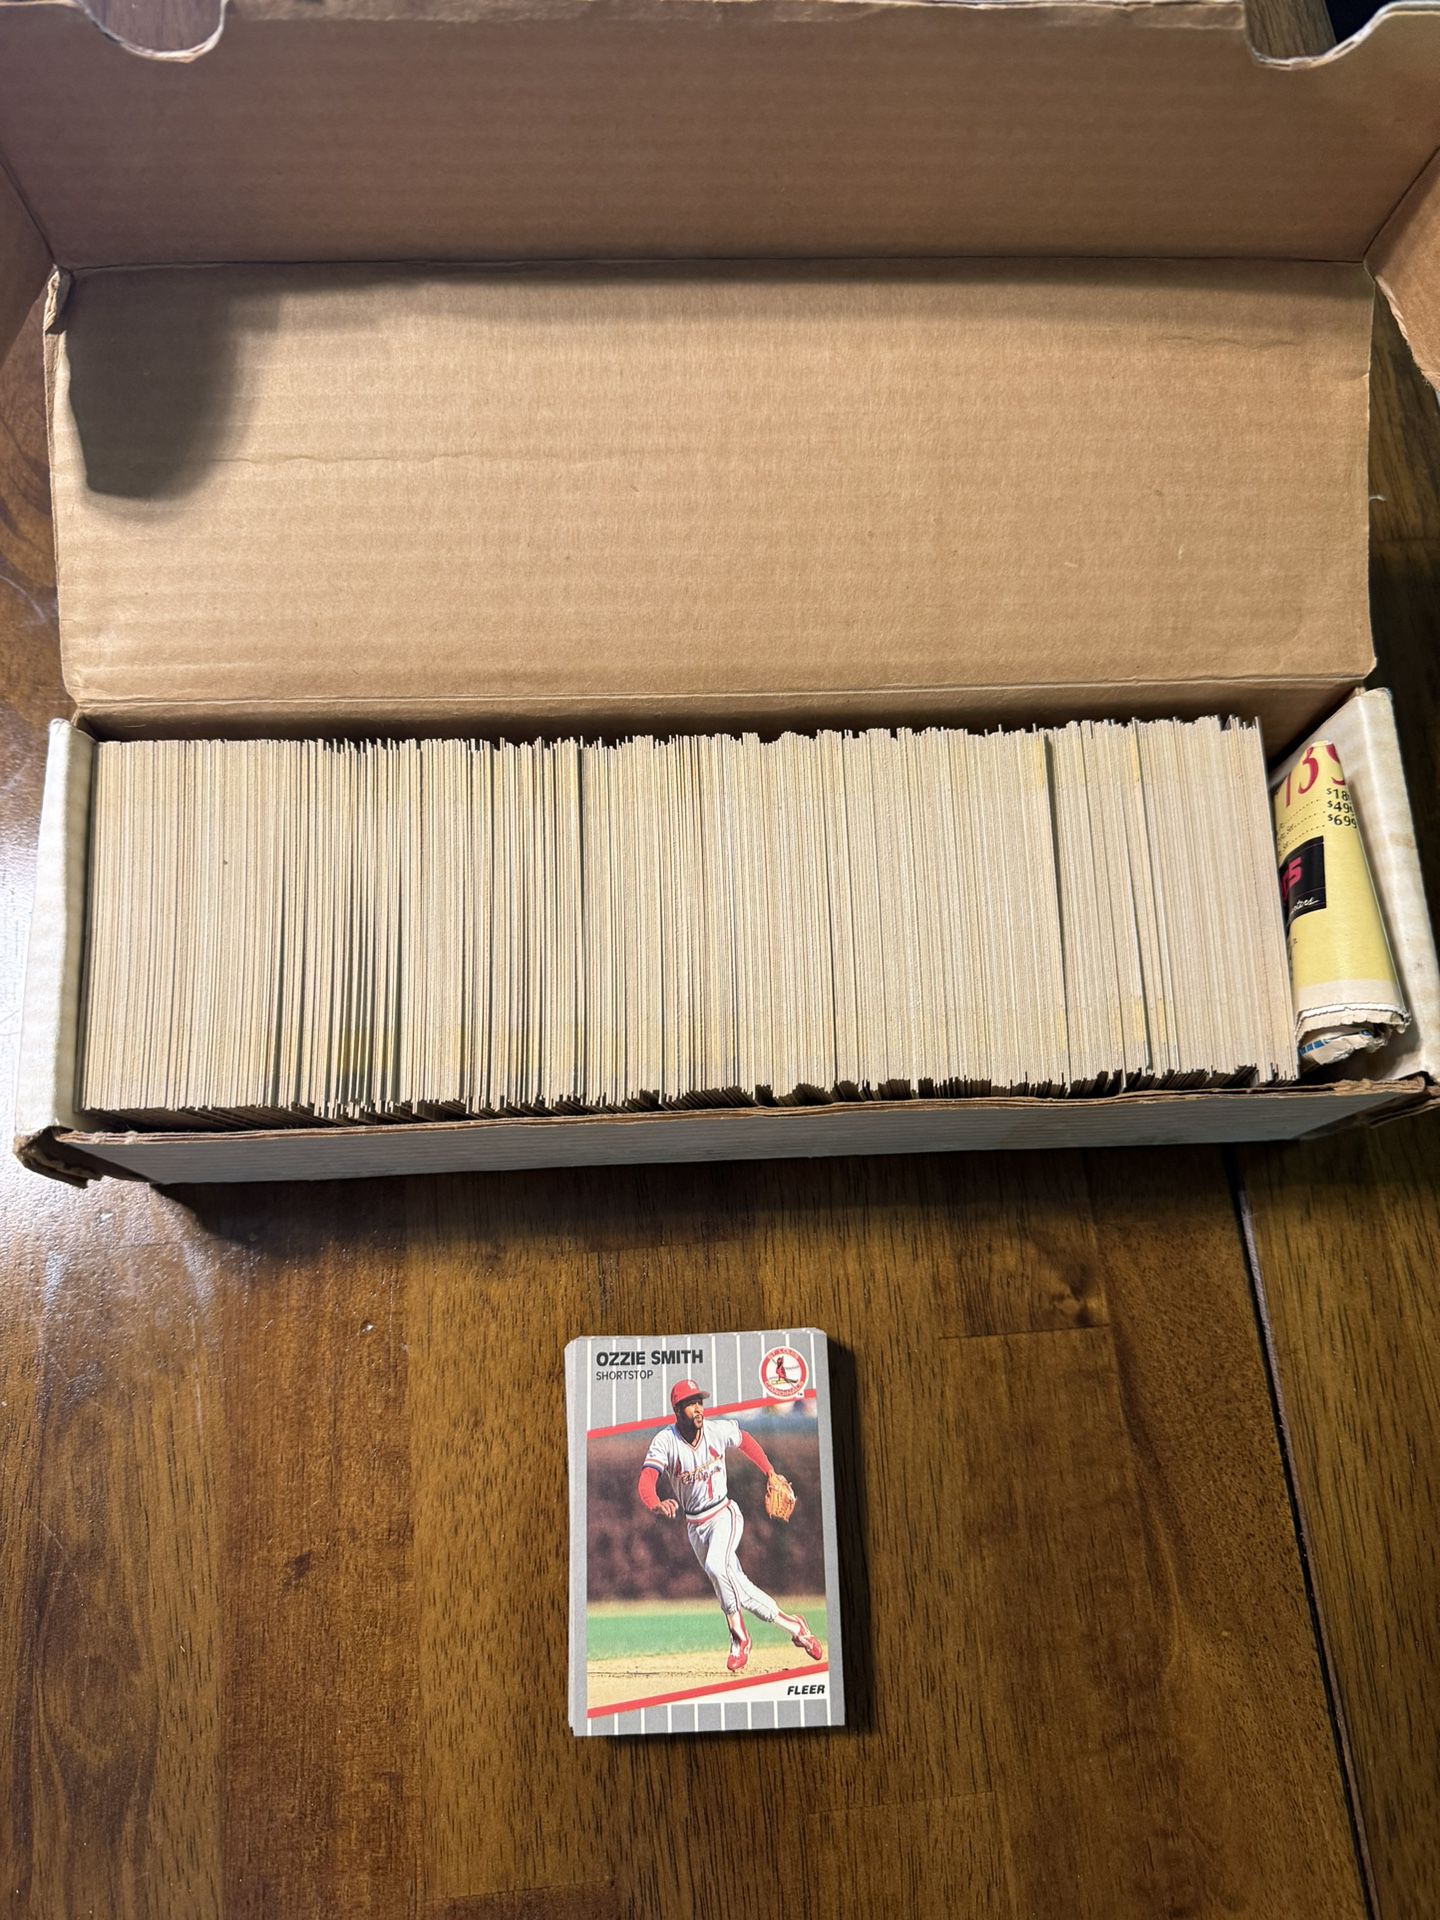 1989 fleer baseball cards